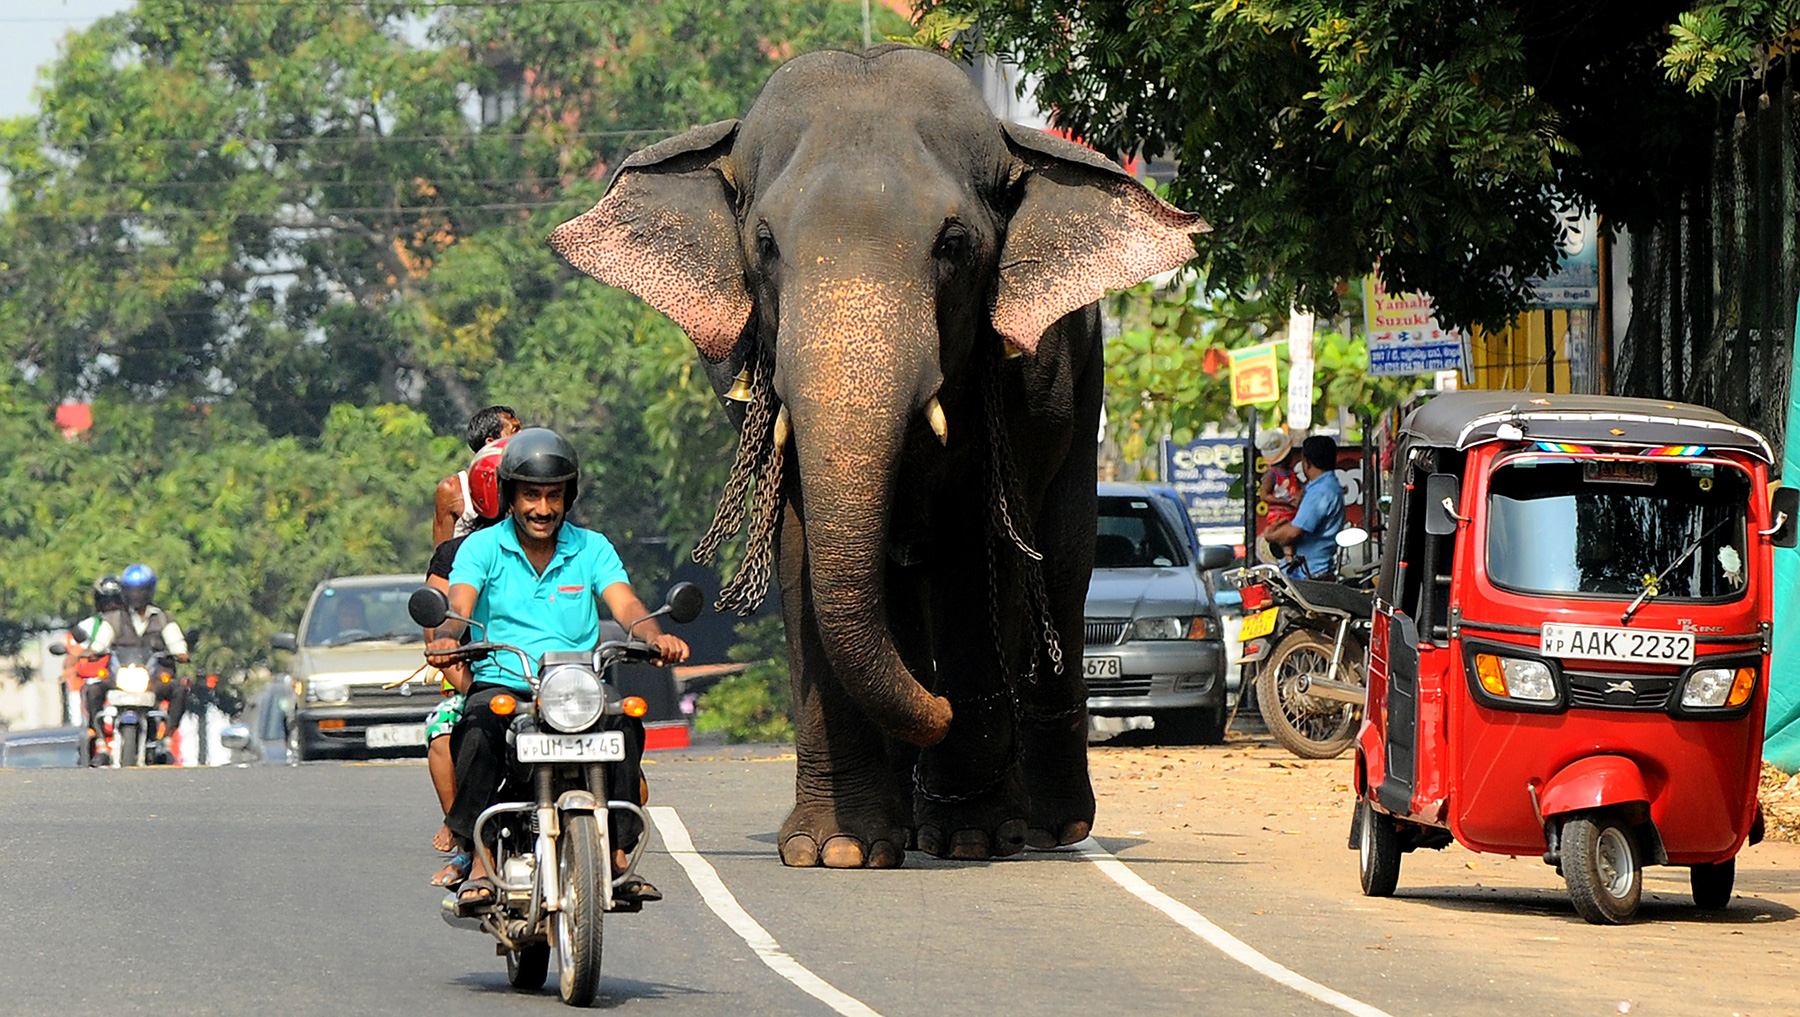 Tour Sri Lanka by Bicycle